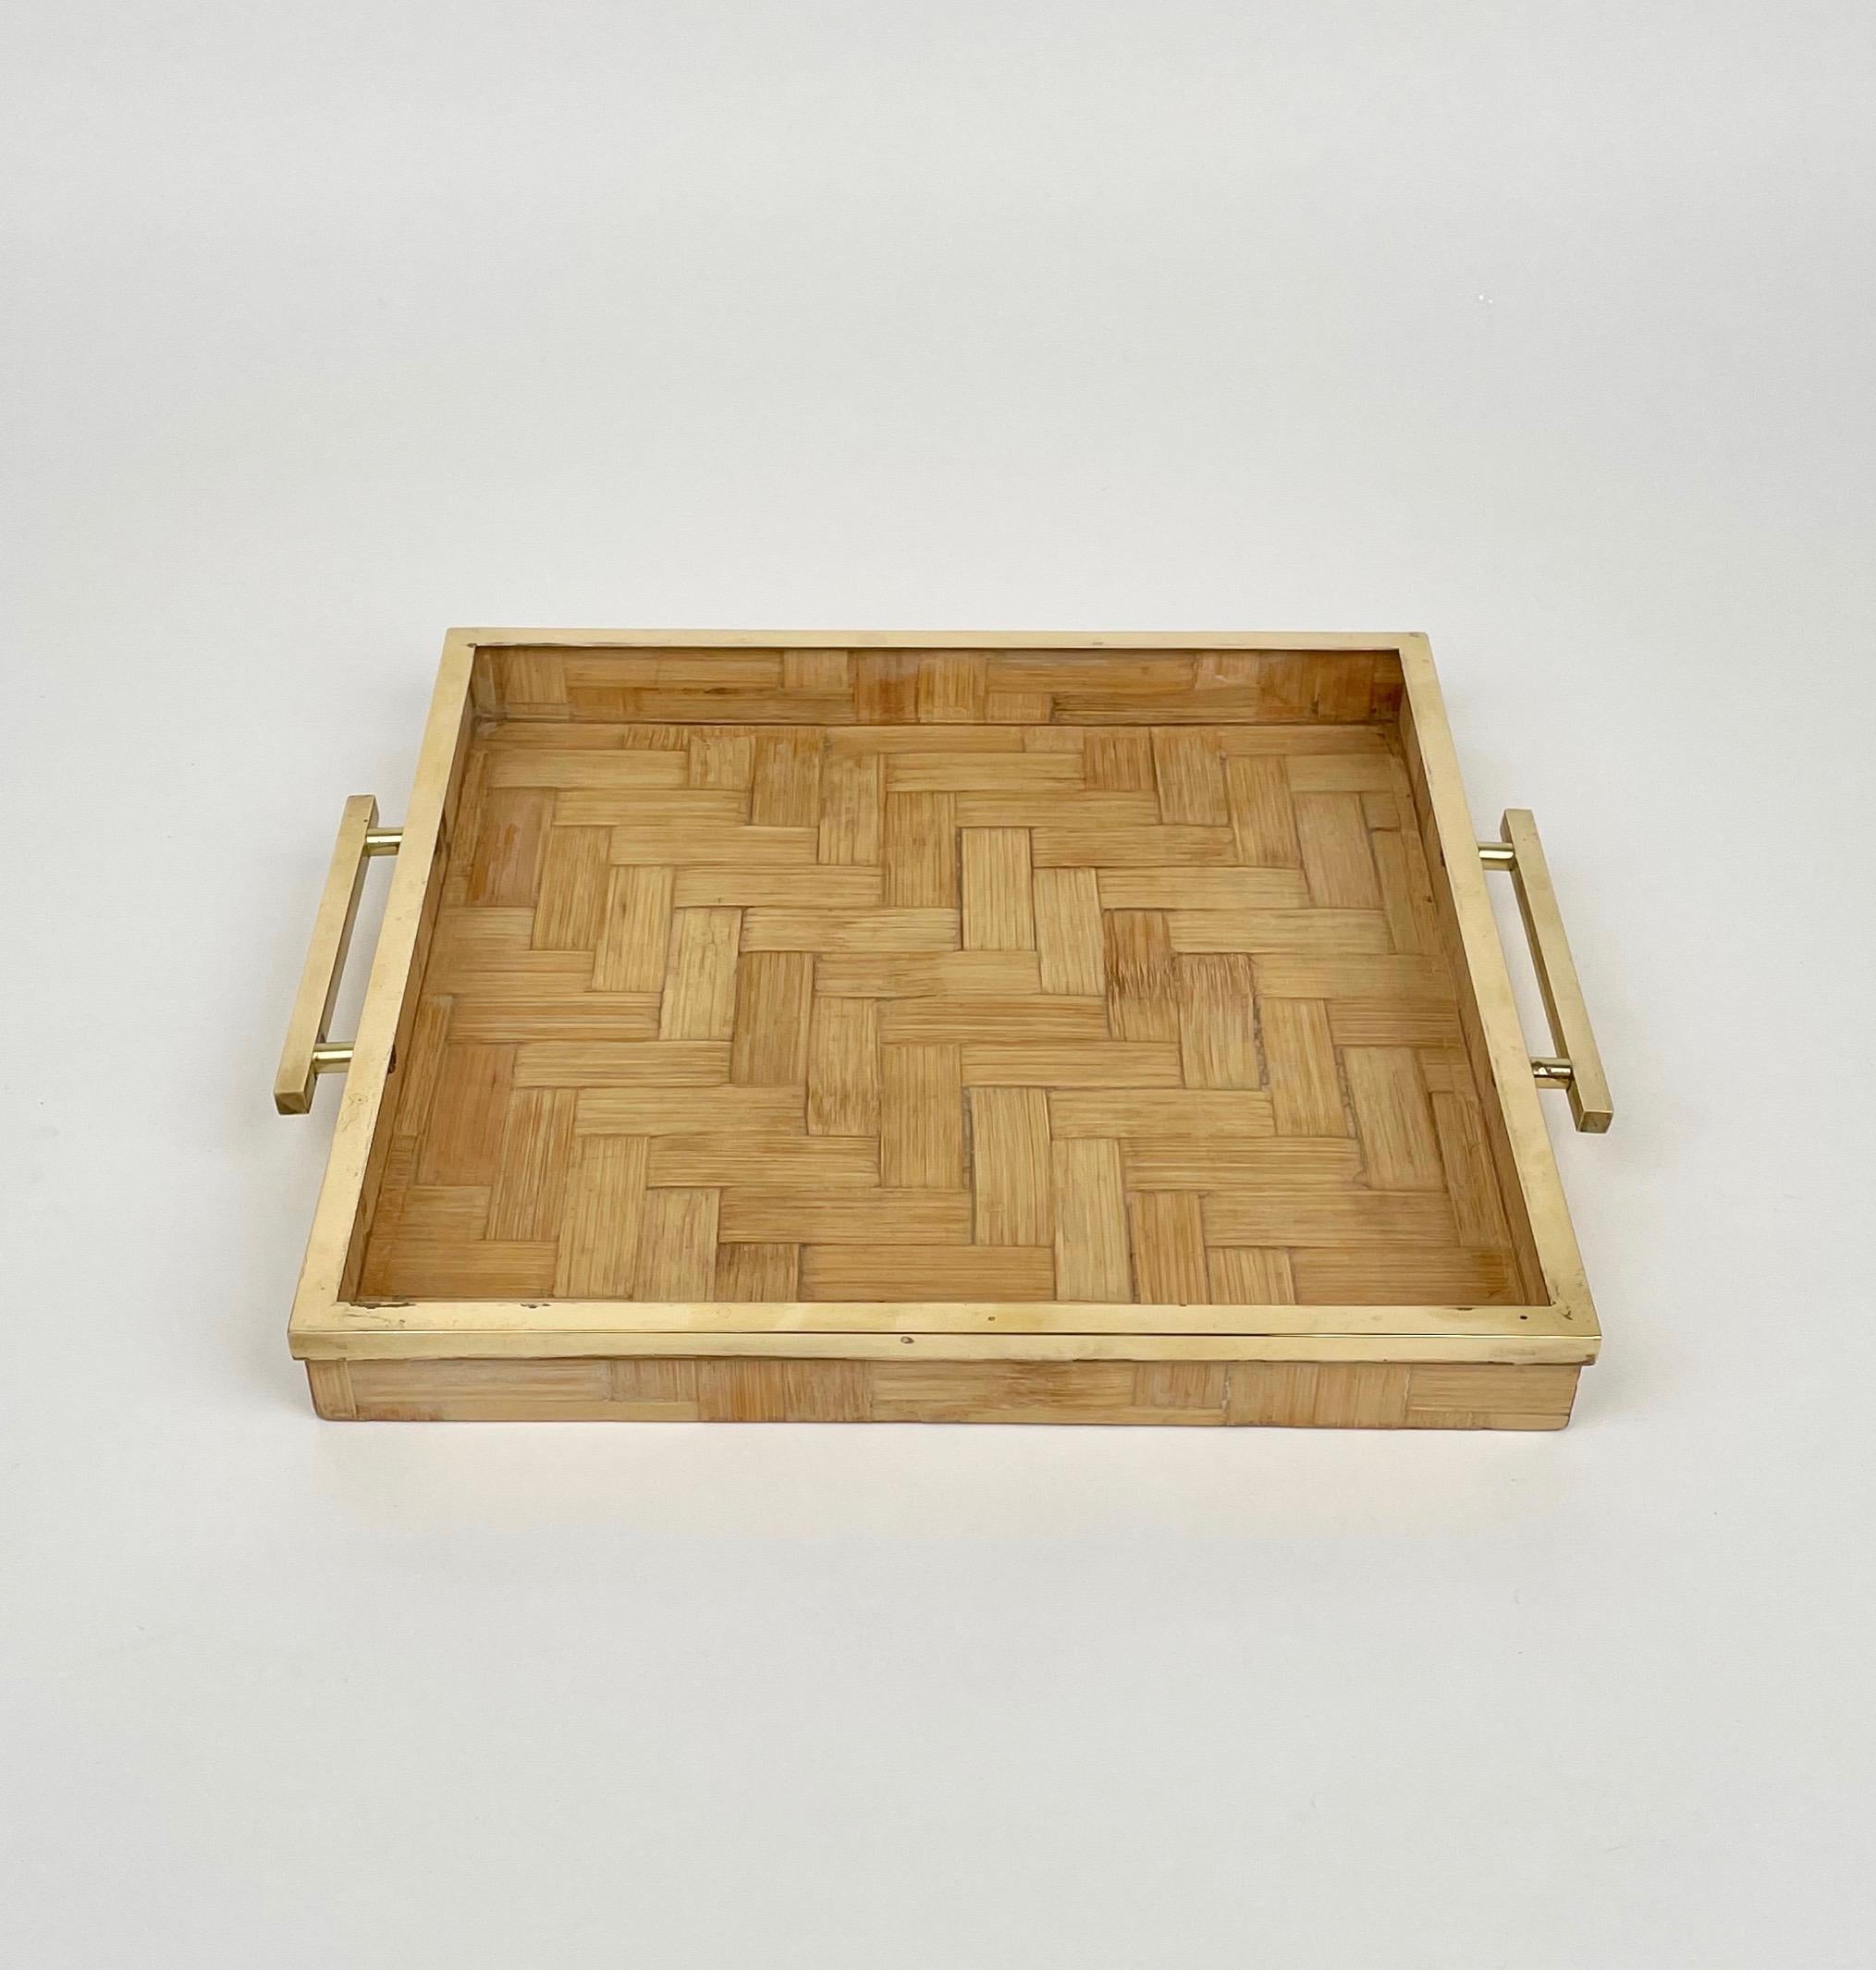 Plateau de service carré en rotin avec bordures et poignées en laiton, attribué à Tommaso Barbi. 

Fabriqué en Italie dans les années 1970.